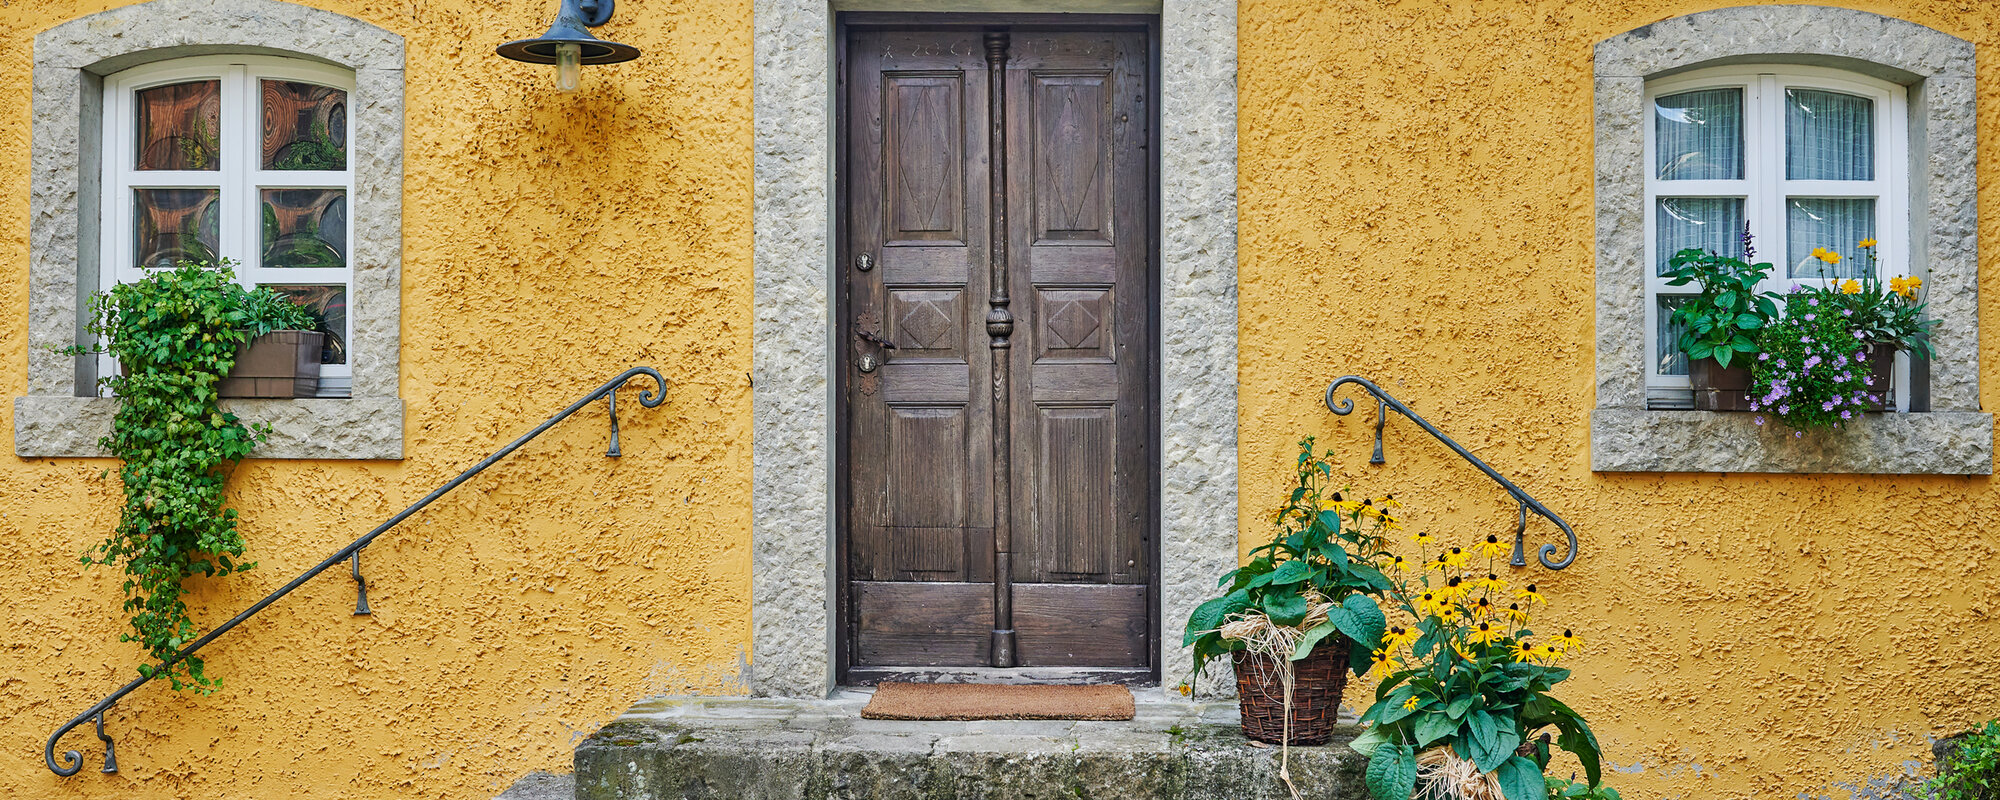 Eine alte hölzerne Eingangstür führt über Steintreppen in ein gelbes Haus.